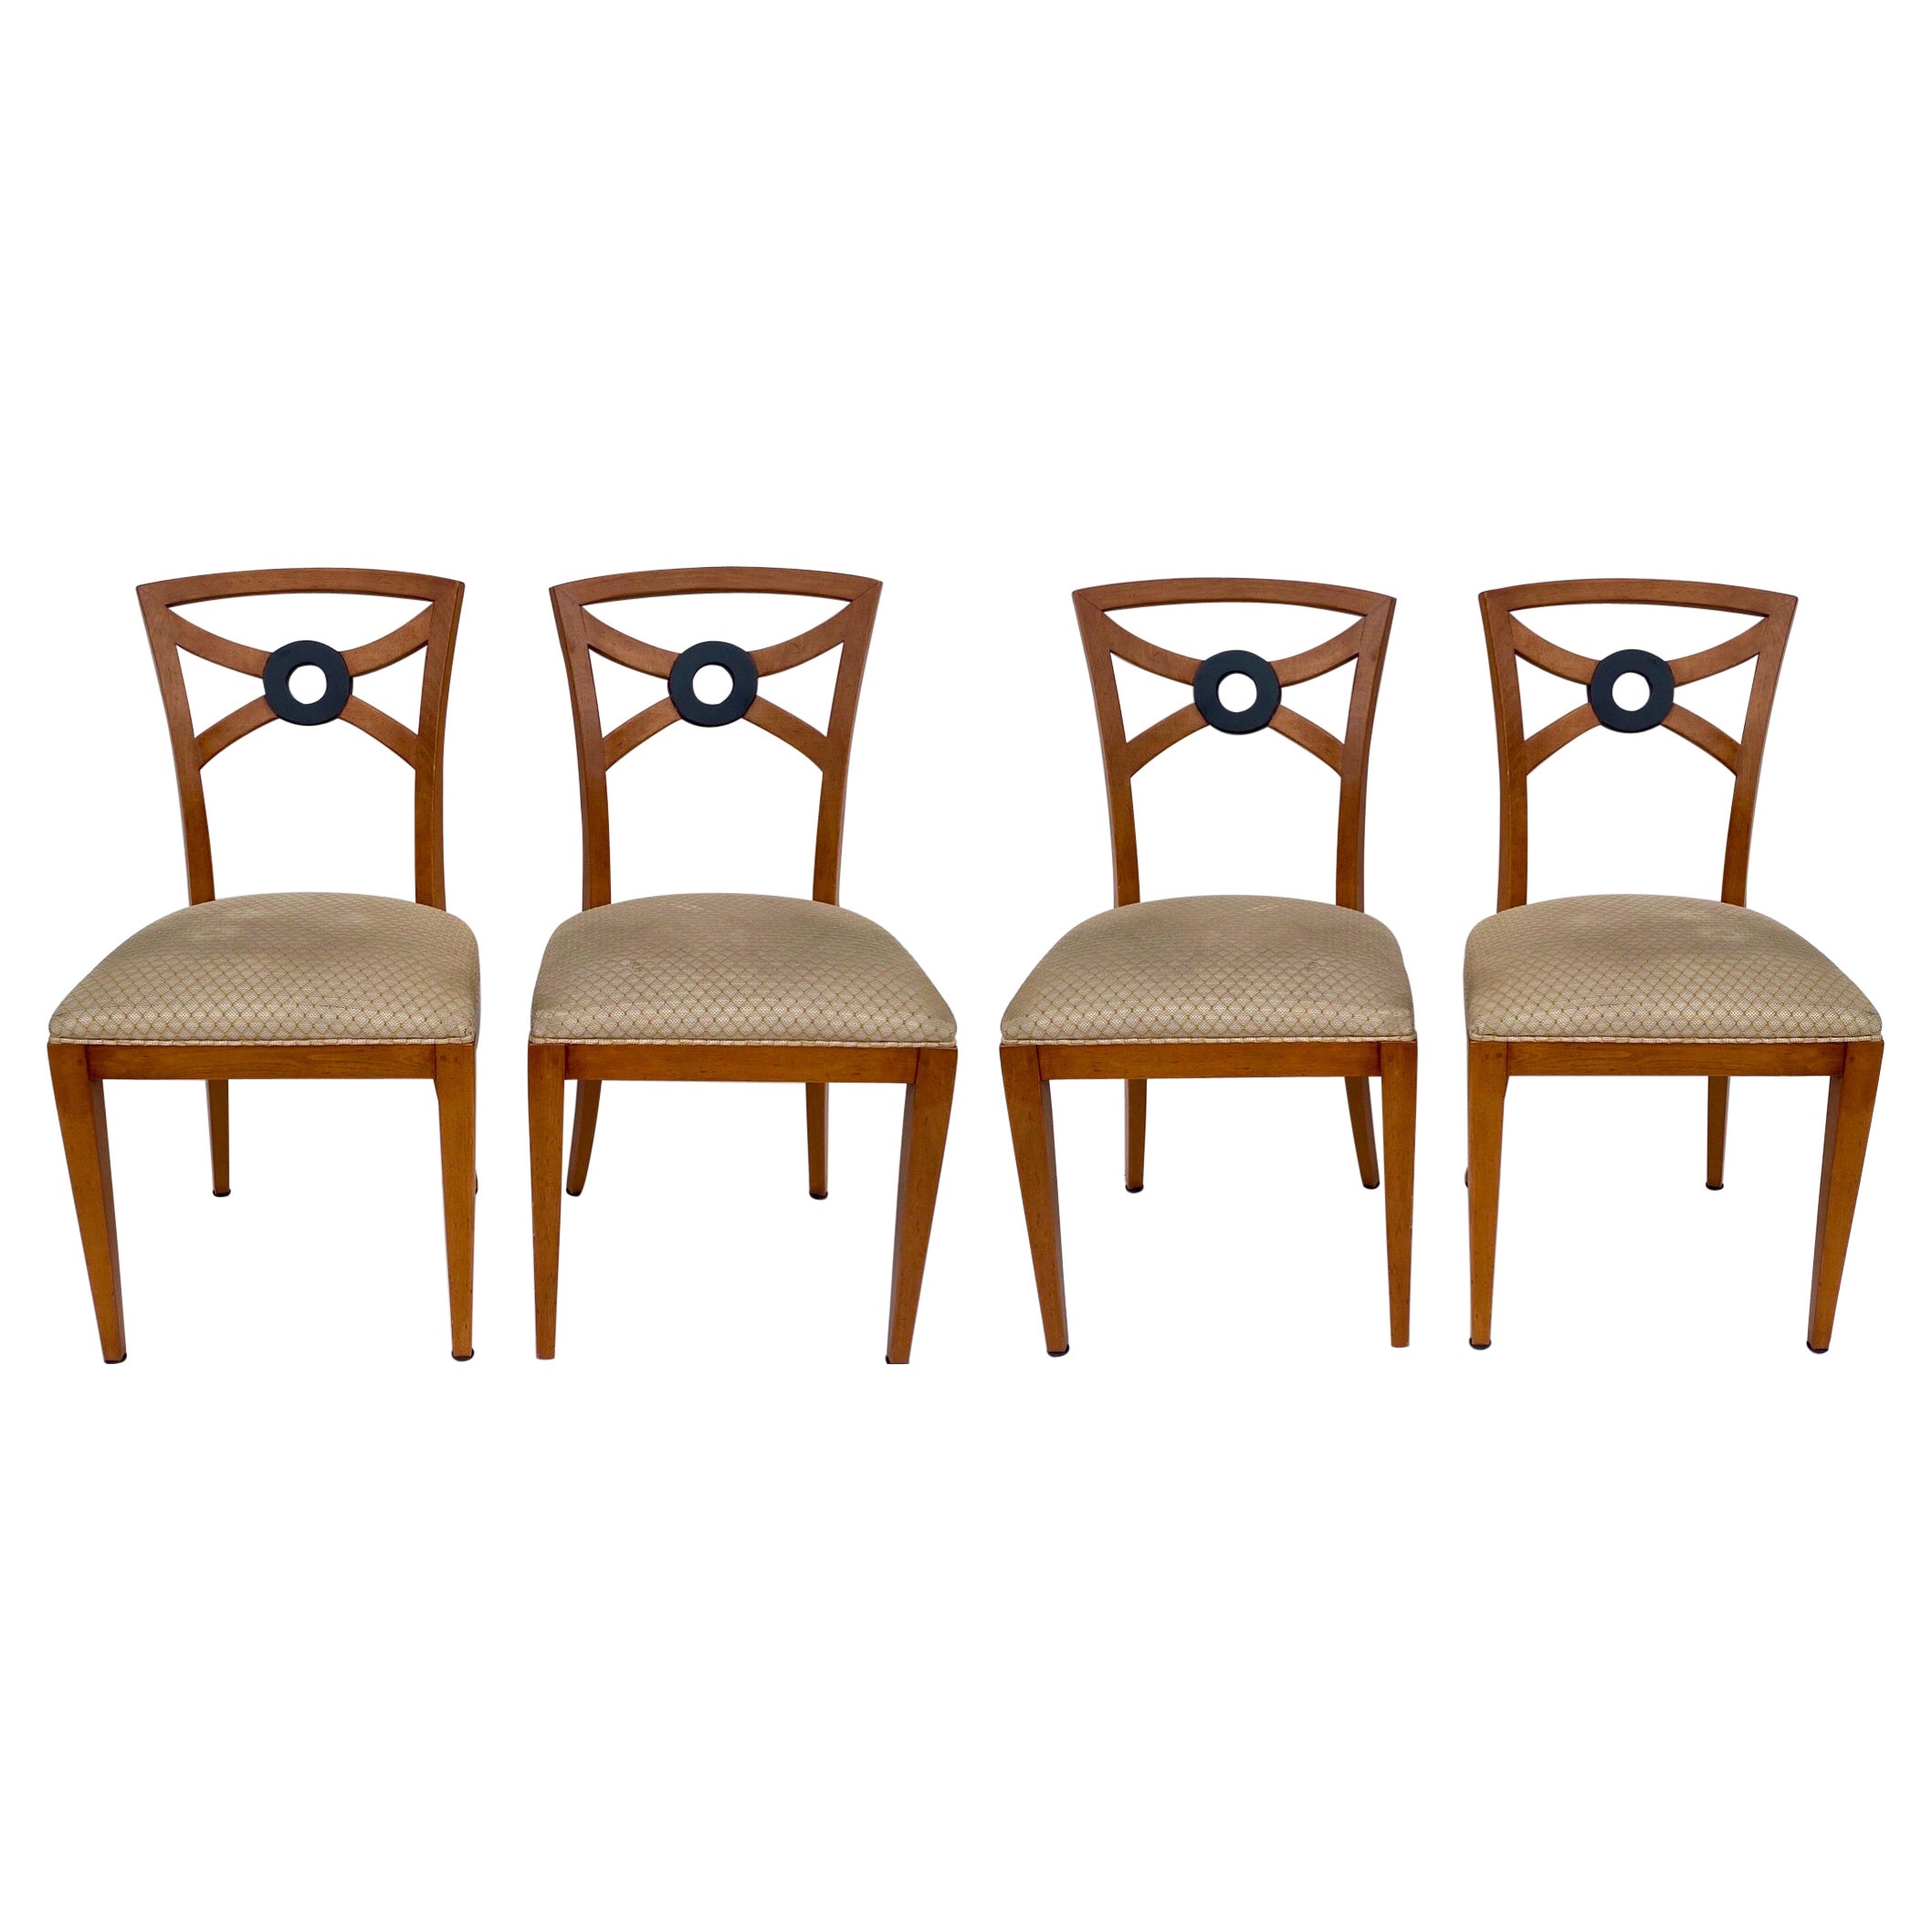 William Switzer Spieltisch-Beistellstühle aus Seidenholz im neoklassischen Stil, S/4